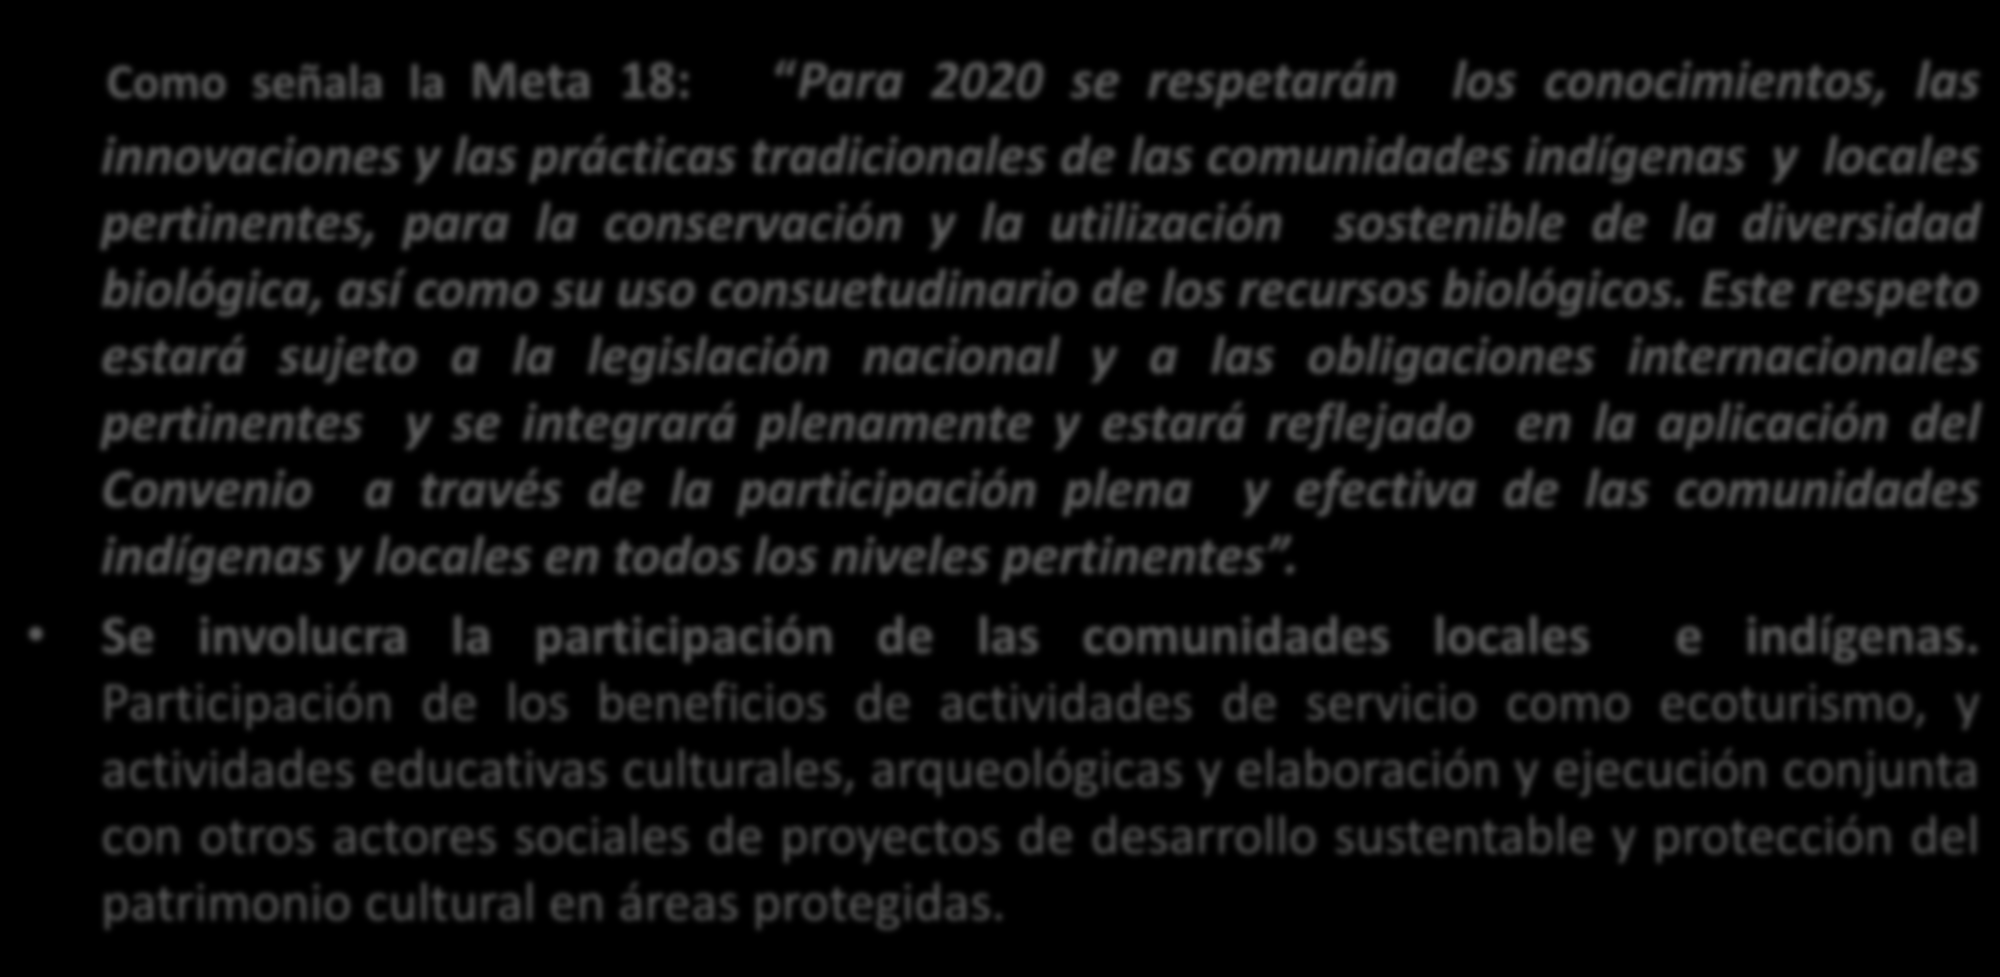 Como señala la Meta 18: Para 2020 se respetarán los conocimientos, las innovaciones y las prácticas tradicionales de las comunidades indígenas y locales pertinentes, para la conservación y la